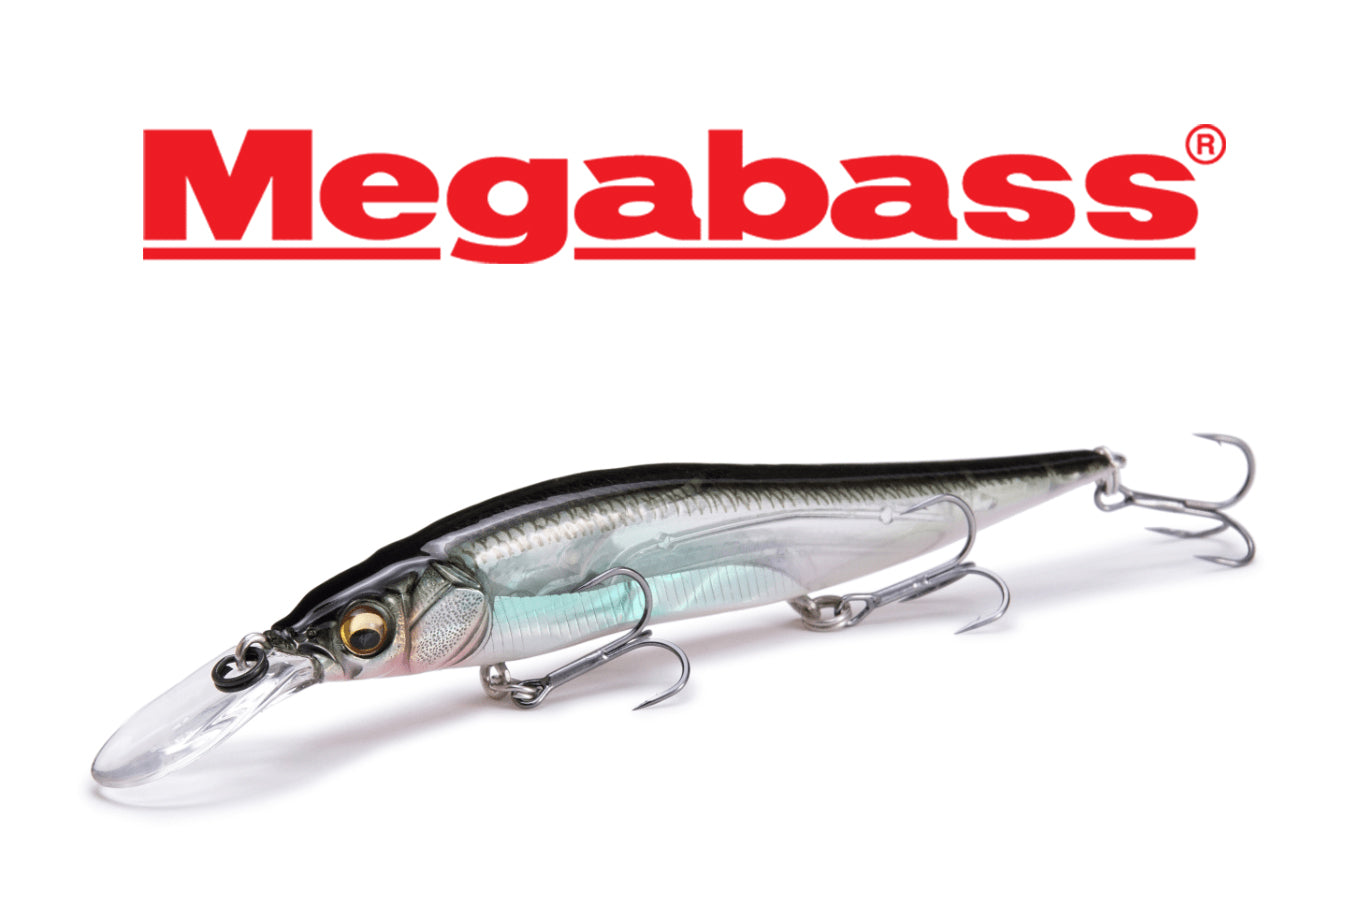 Megabass - Vision OneTen+1 Jr, Suspending, Deep Diving (2-6>), Jerk Bait, Fishing Lure